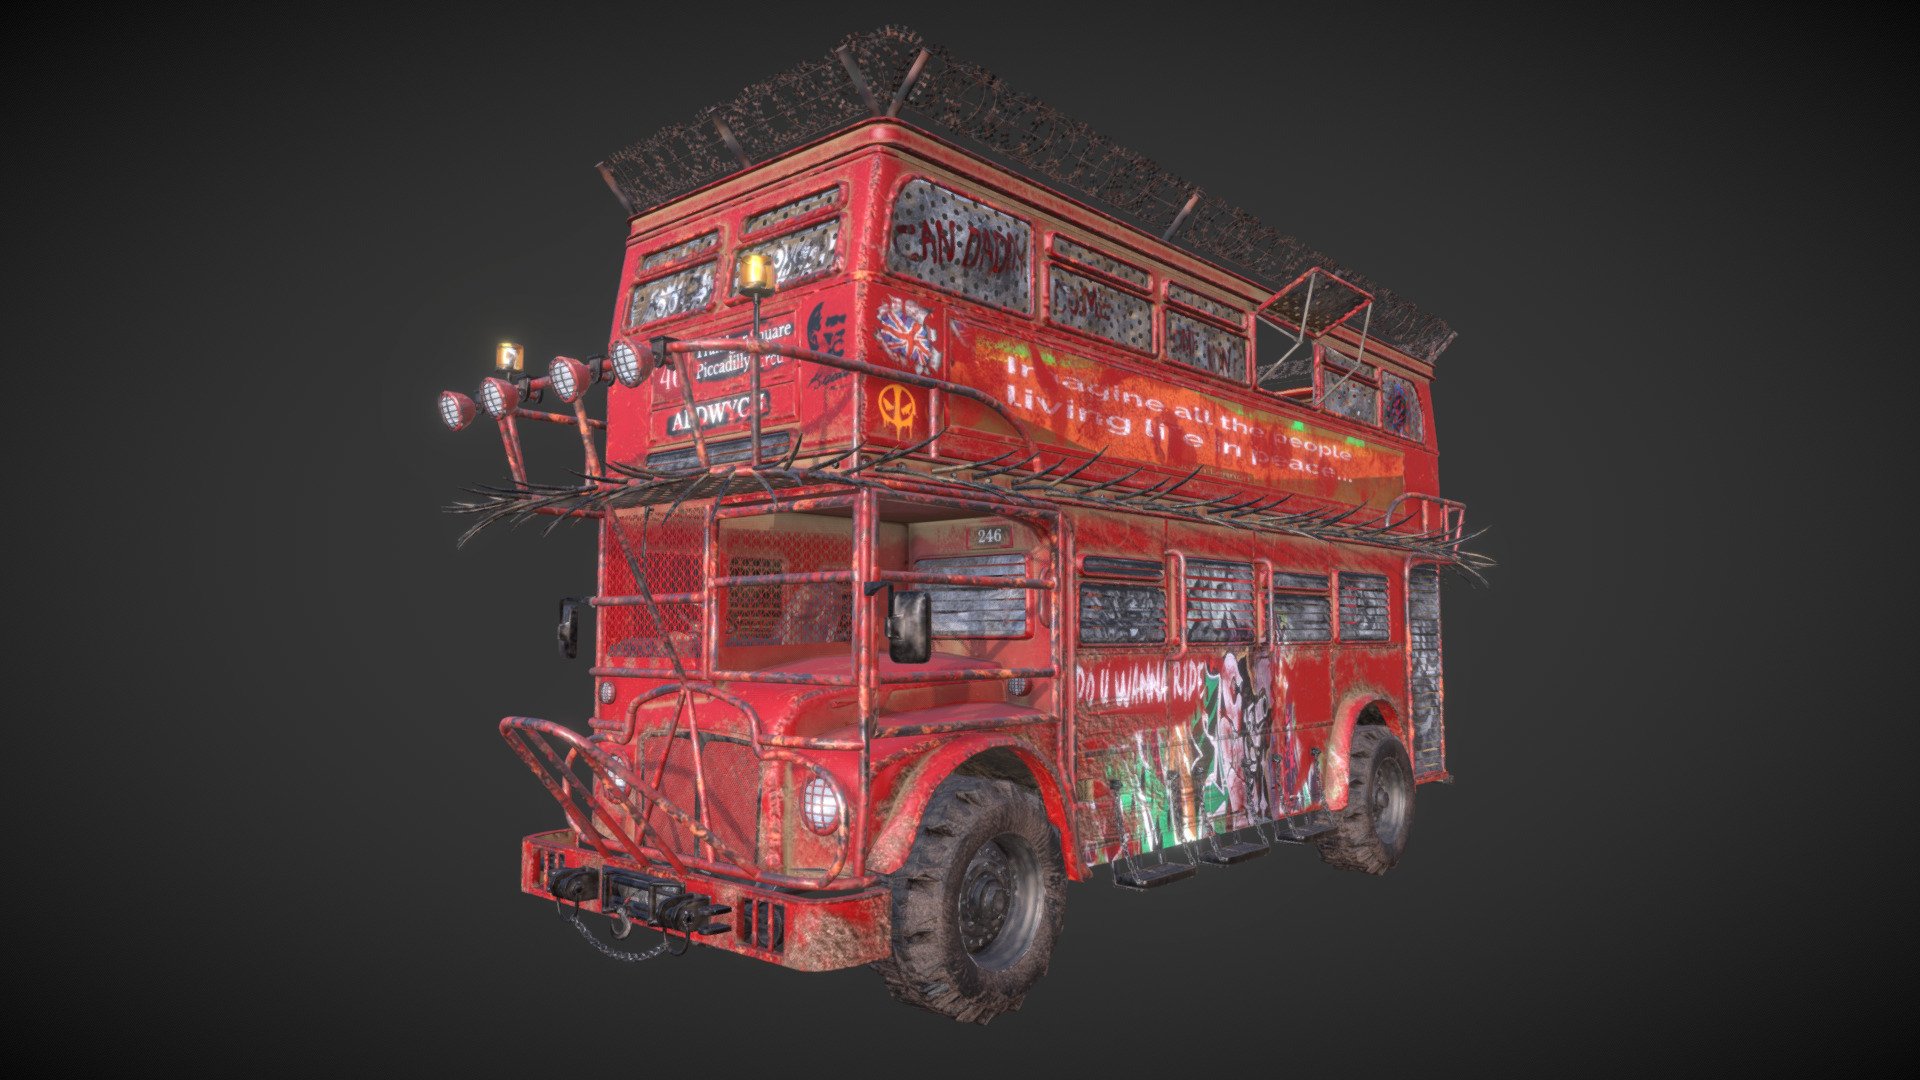 Hum3D Survival 3D art challange Serhan Dereli Submission.
https://forums.hum3d.com/main-forum/survival-car-2018-double-decker/ - Dabıl Bekkır - 3D model by dereli 3d model